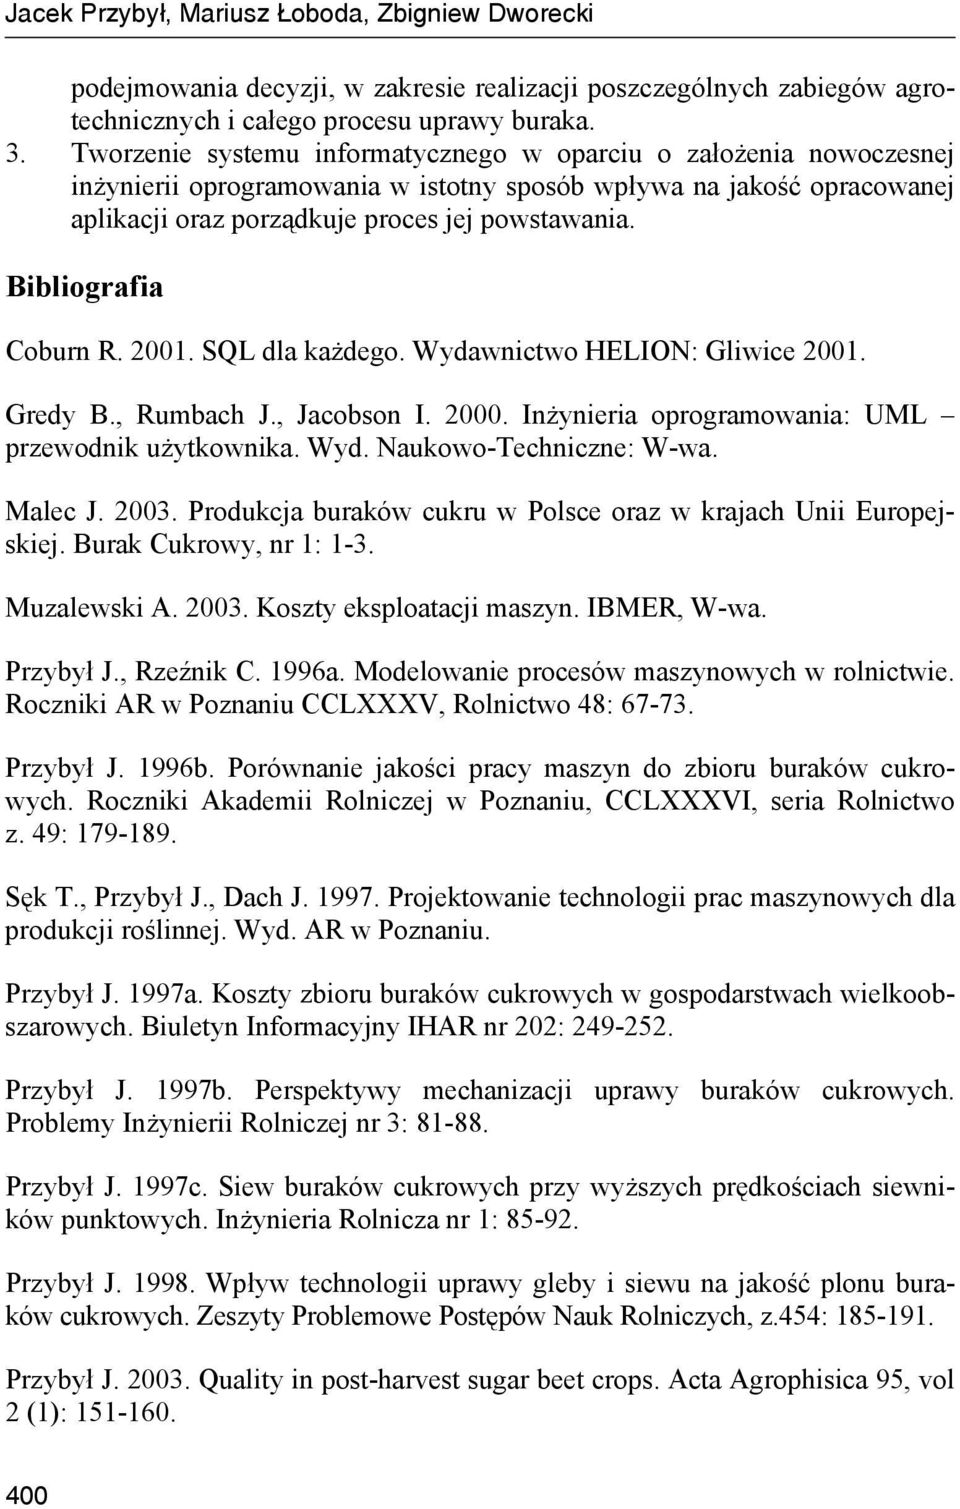 Bibliografia Coburn R. 2001. SQL dla każdego. Wydawnictwo HELION: Gliwice 2001. Gredy B., Rumbach J., Jacobson I. 2000. Inżynieria oprogramowania: UML przewodnik użytkownika. Wyd. Naukowo-Techniczne: W-wa.